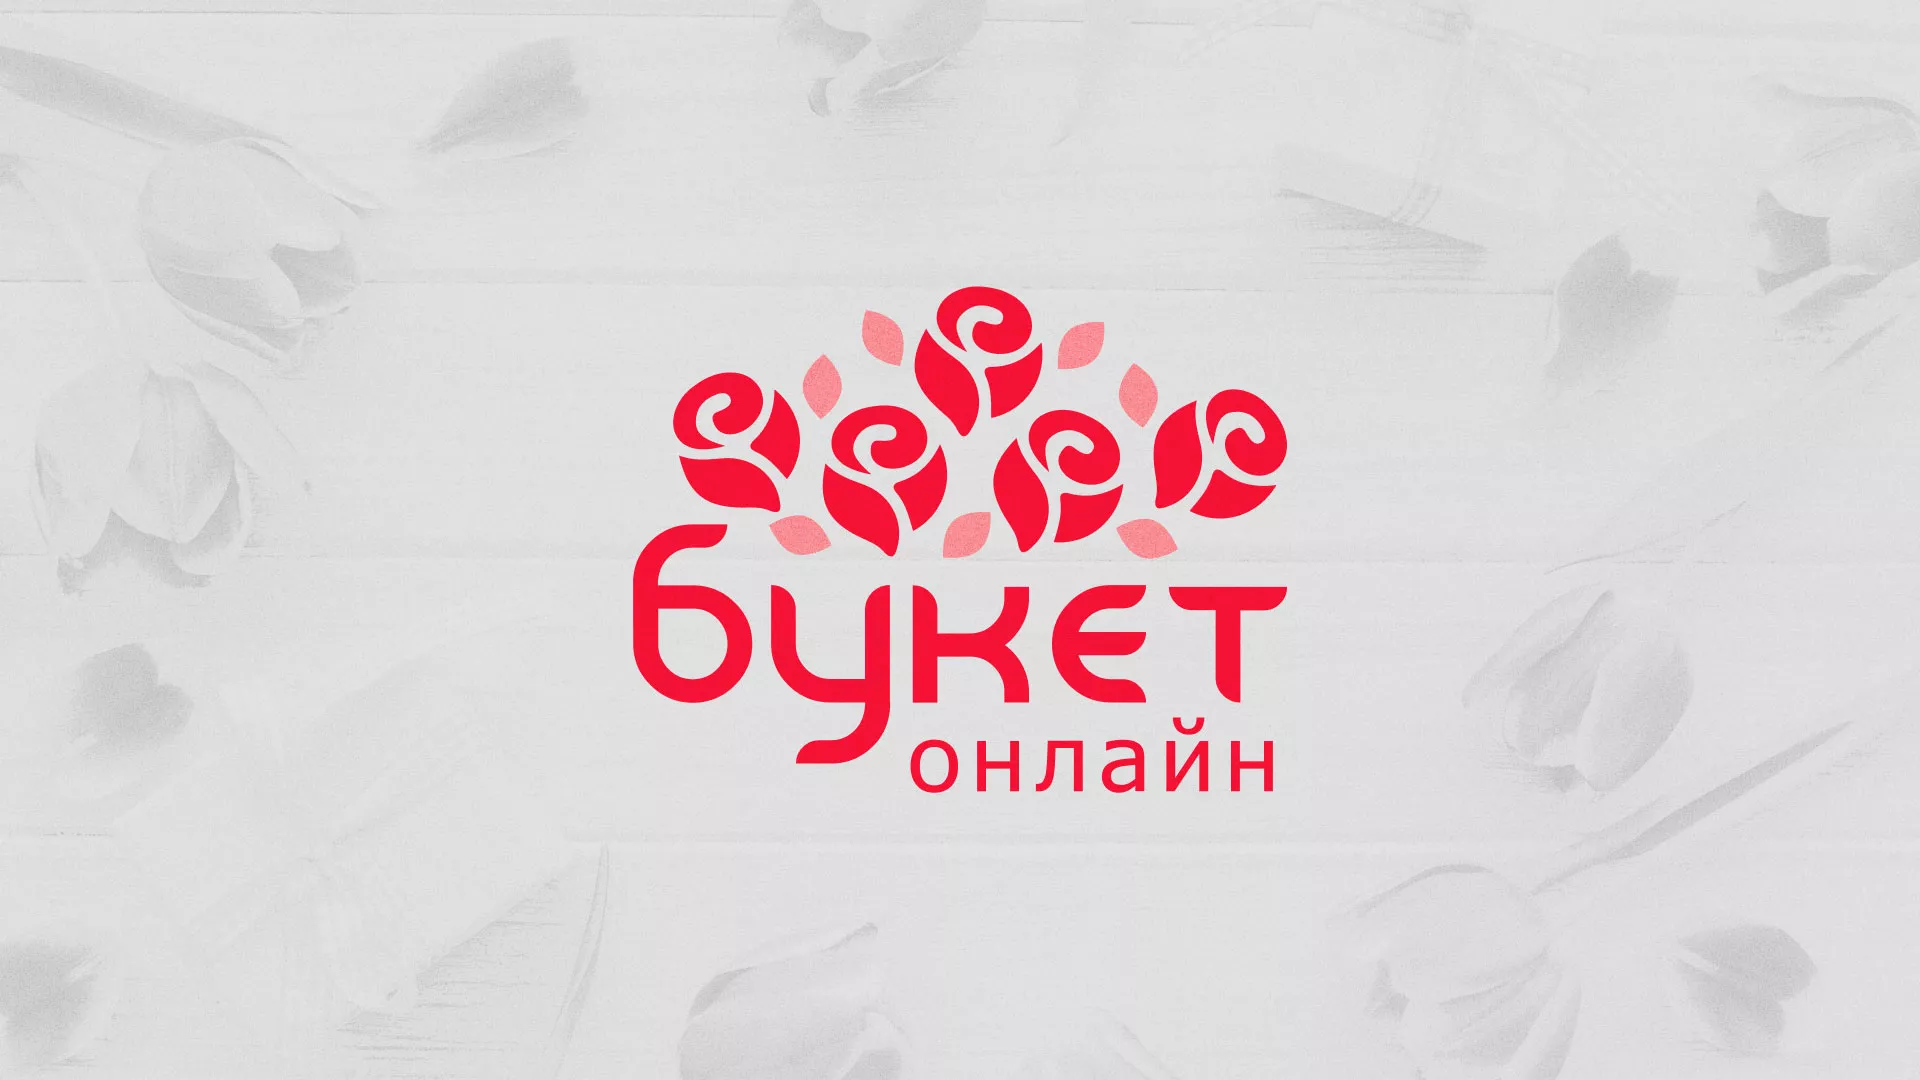 Создание интернет-магазина «Букет-онлайн» по цветам в Серпухове